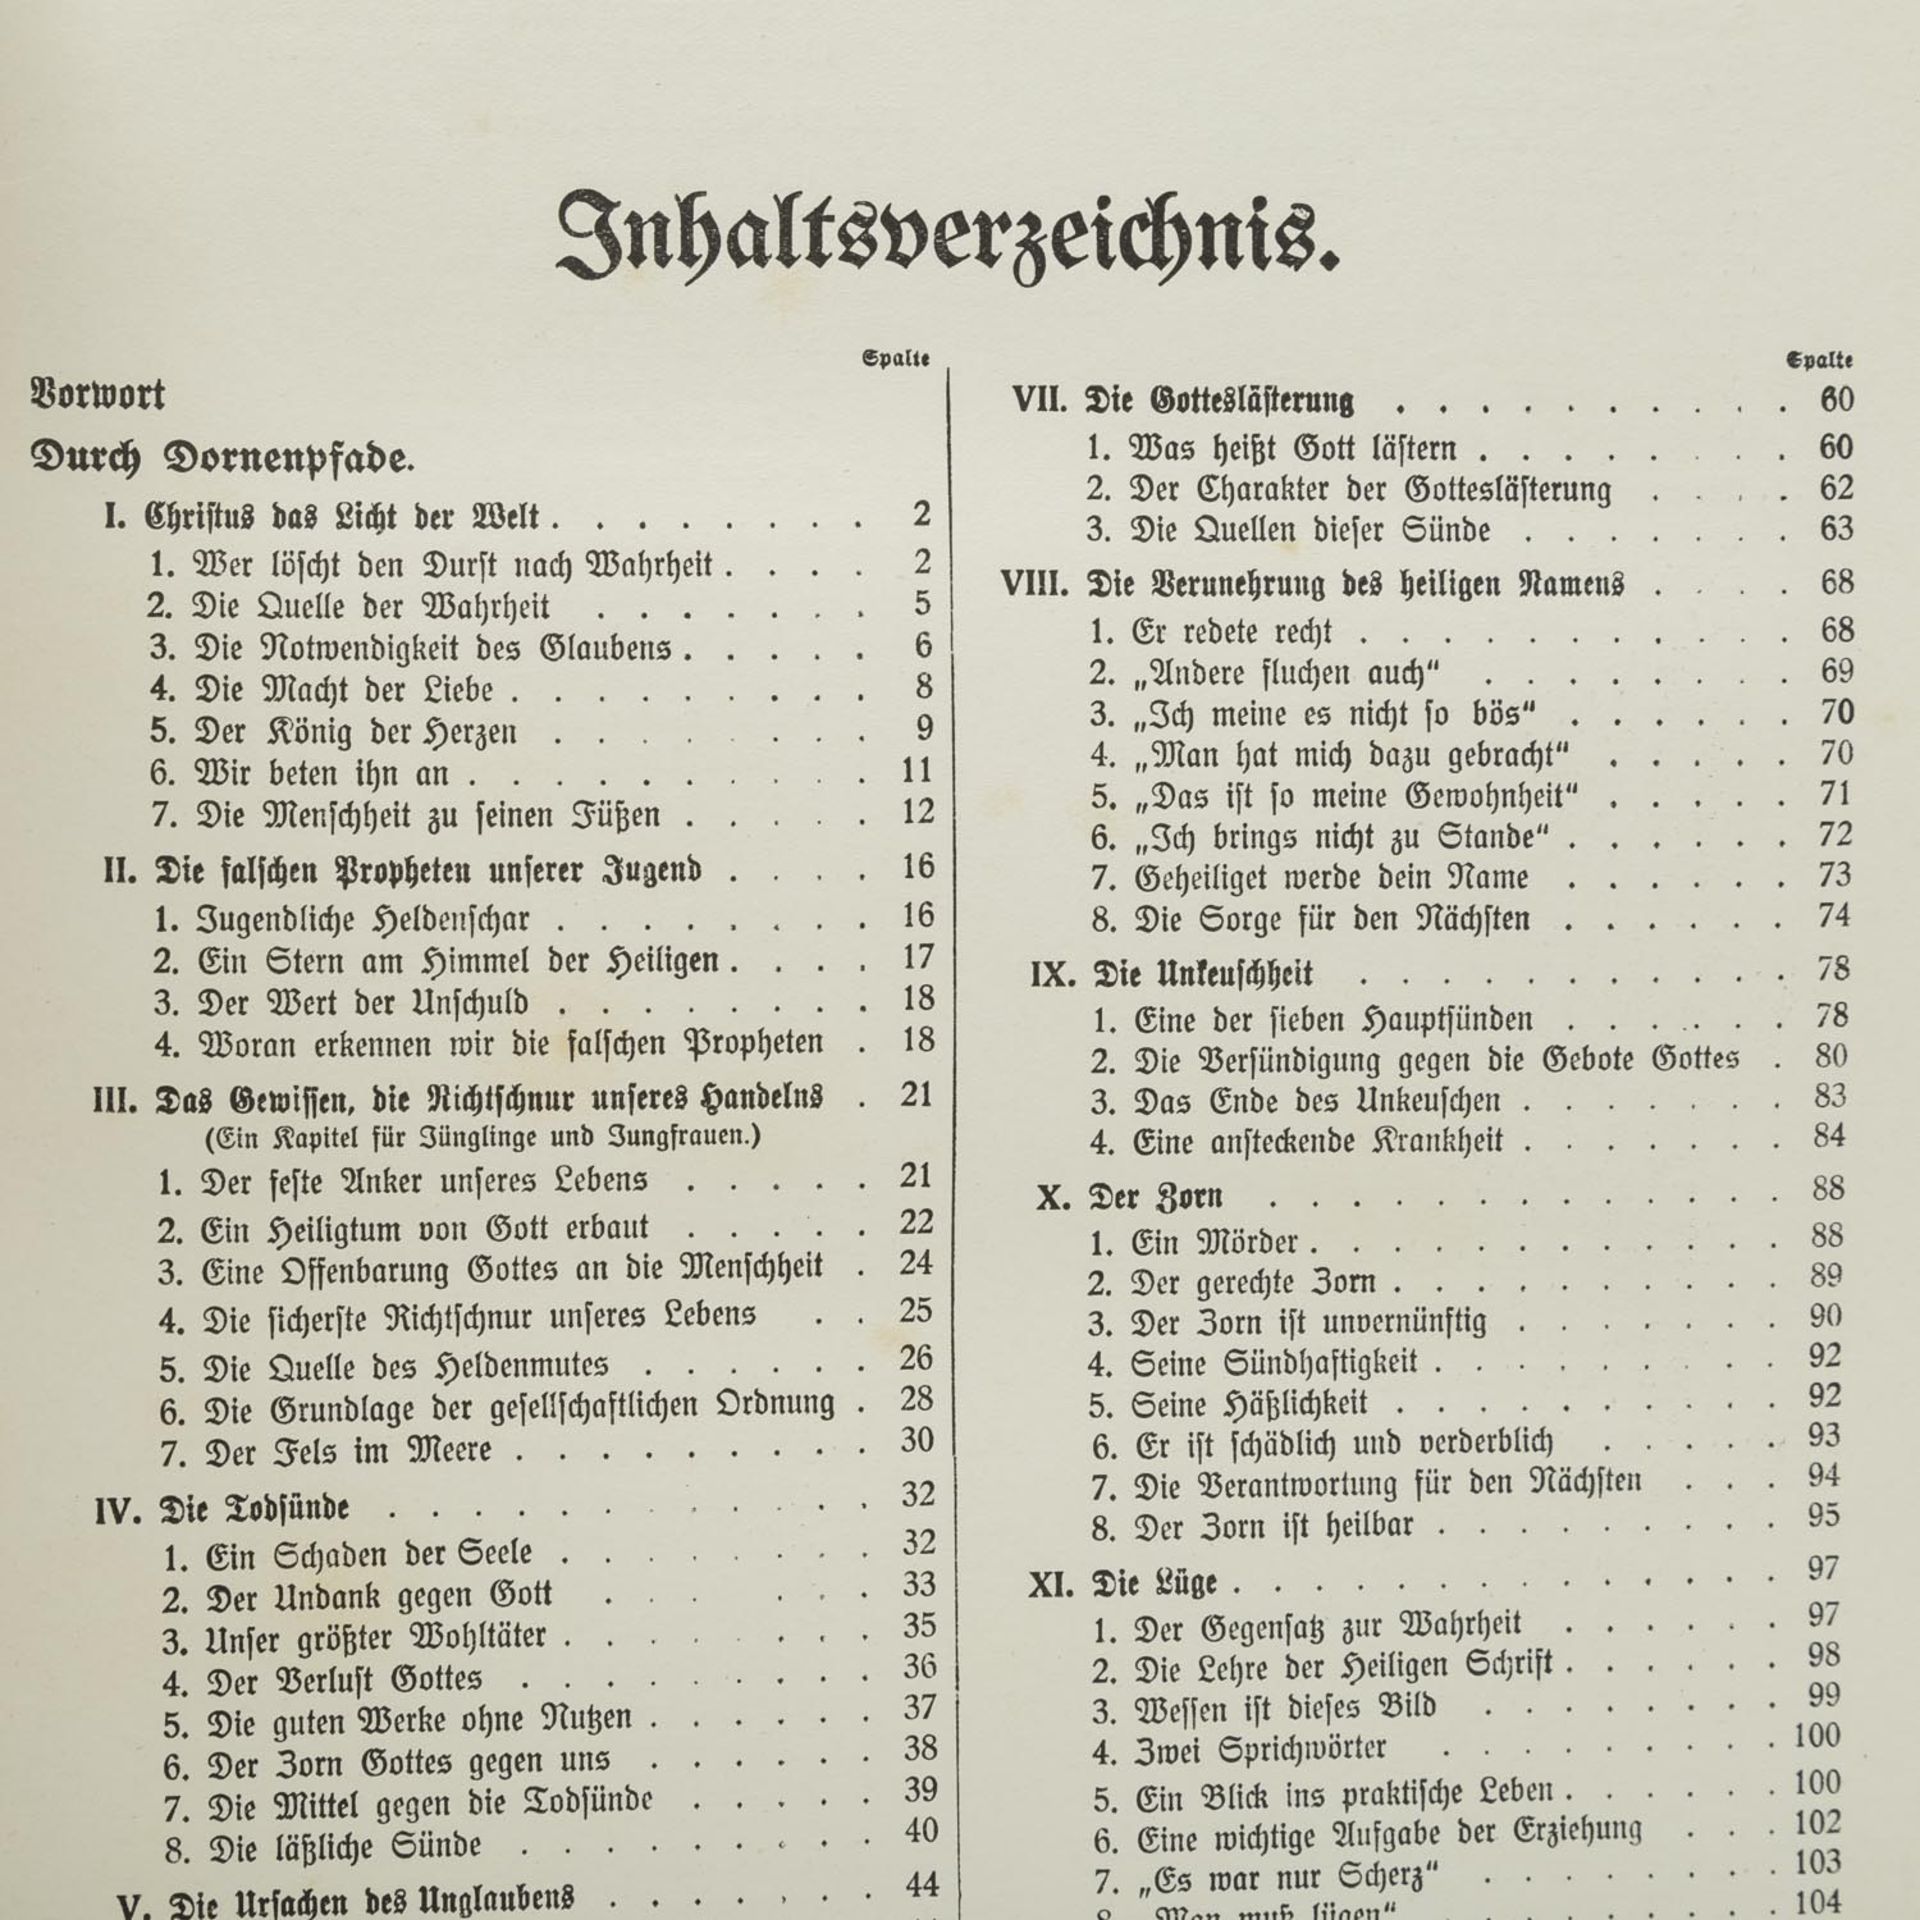 DAS GOLDENE KATHOLIKENBUCHFÜR DAS GLÄUBIGE VOLK von Dekan Fr. X. Wetzel. Wiesbaden 1914. Mit - Bild 3 aus 5